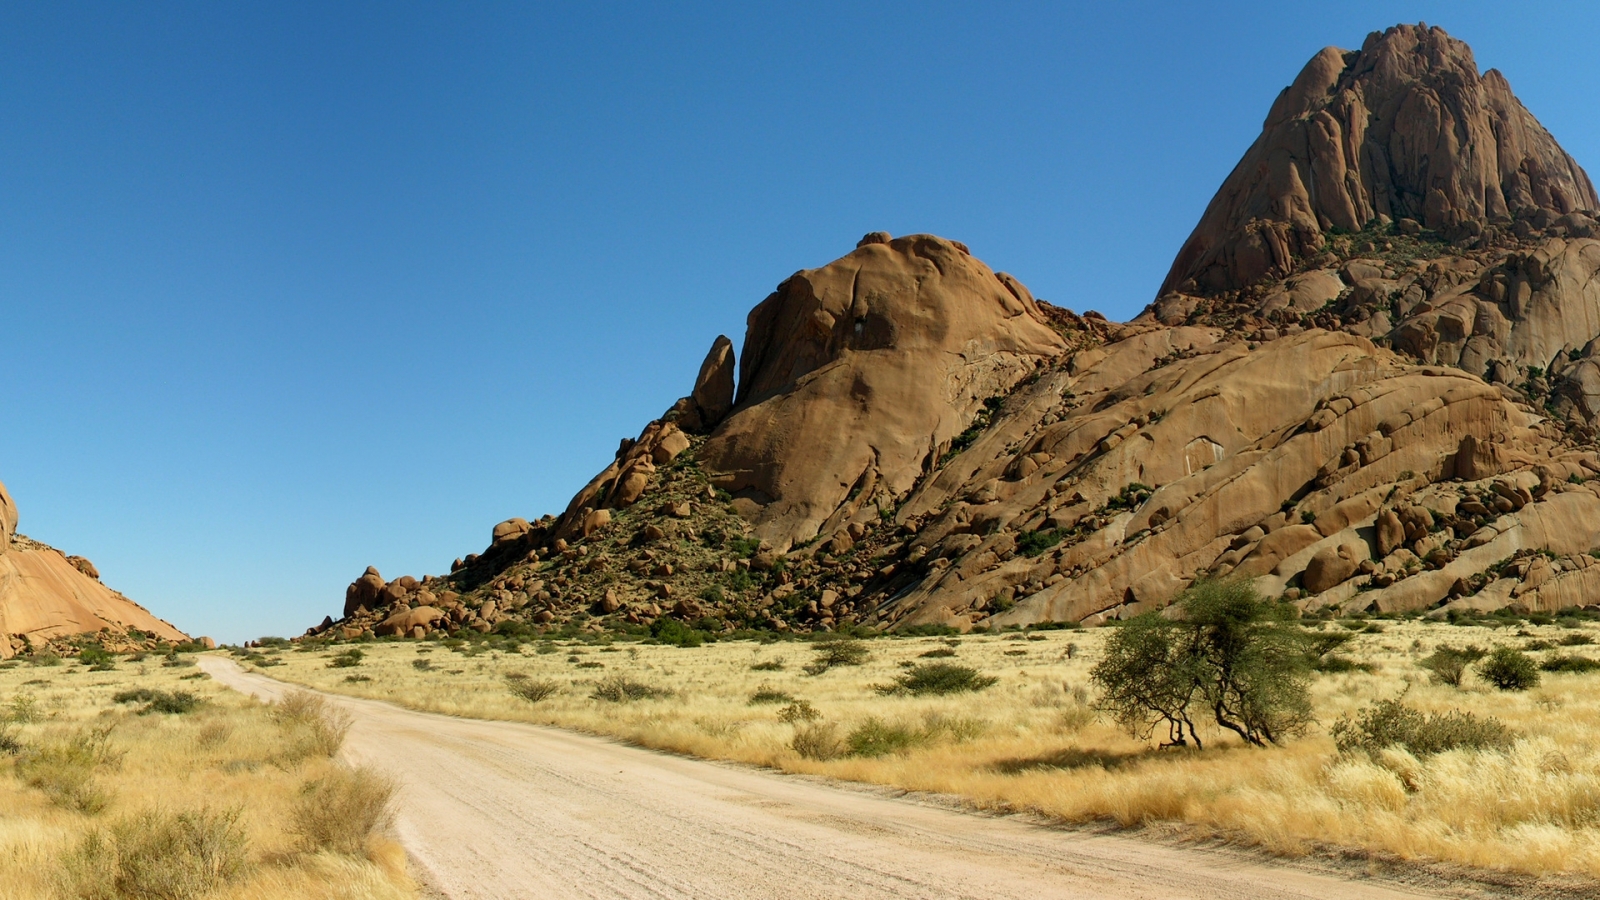 Road in Desert for 1600 x 900 HDTV resolution